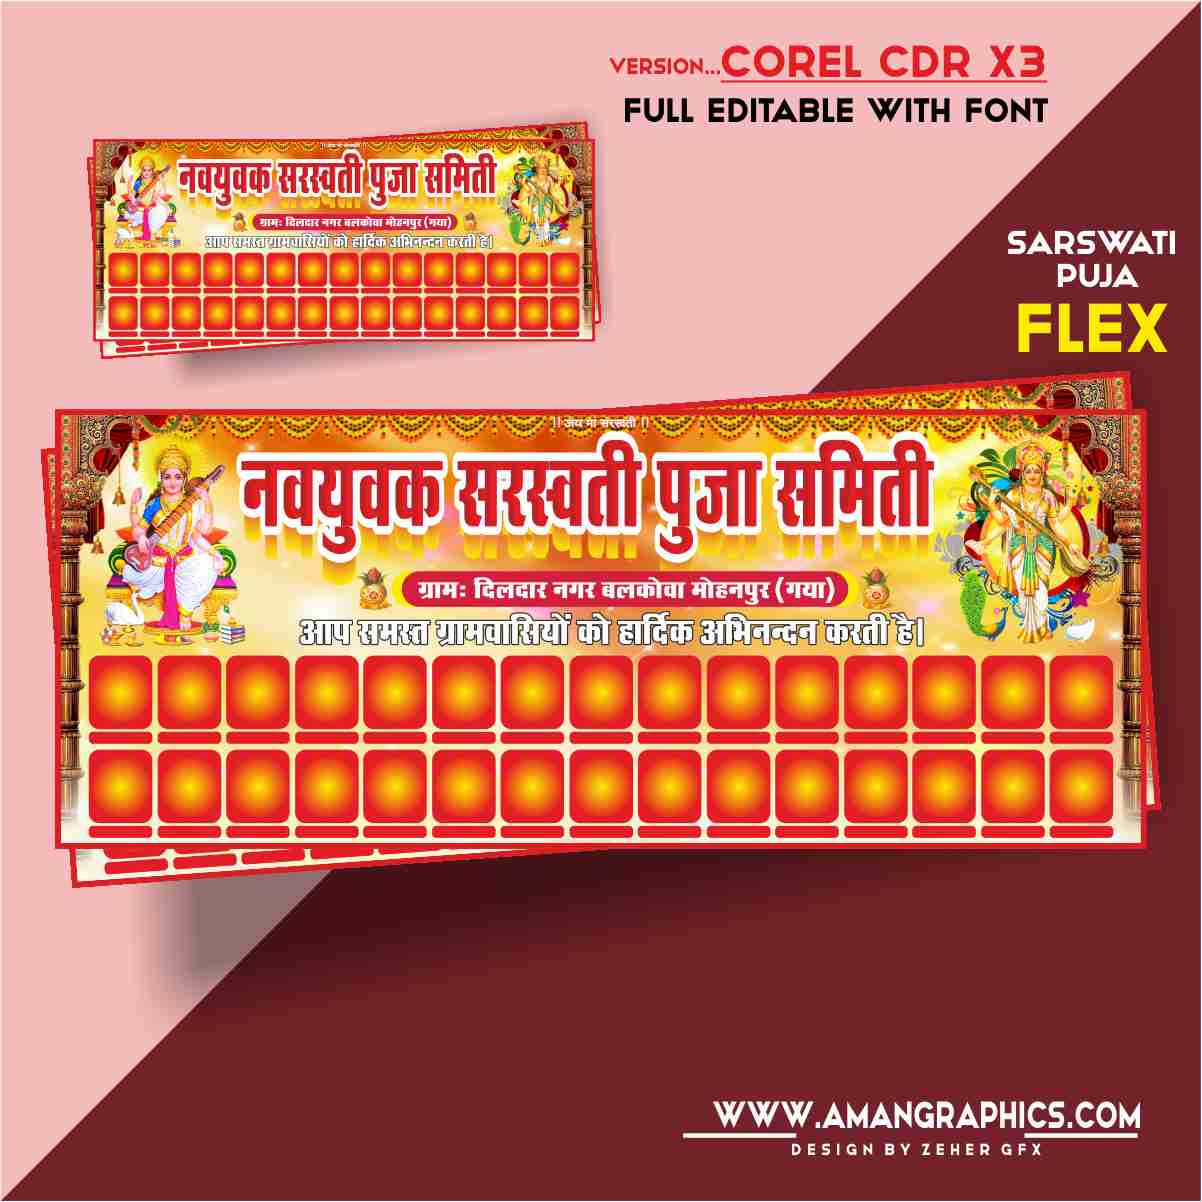 Sarswati Puja Banner Design Cdr File FLEX BANNER FLEX